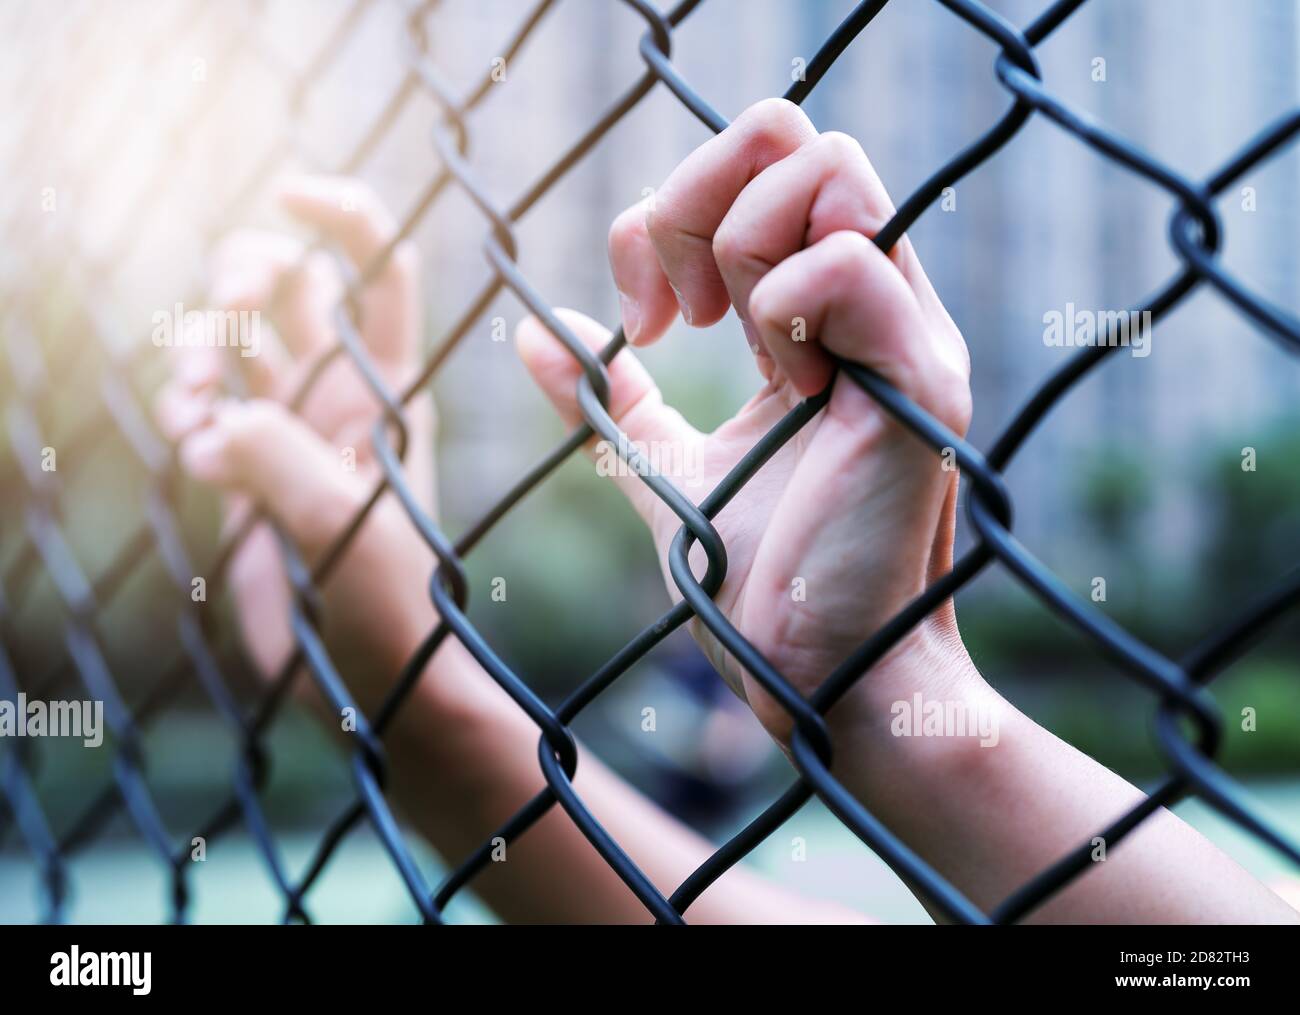 Concetto della Giornata internazionale dei diritti umani, le donne si impartano sulla recinzione a catena. Depressione, problemi e soluzione Foto Stock